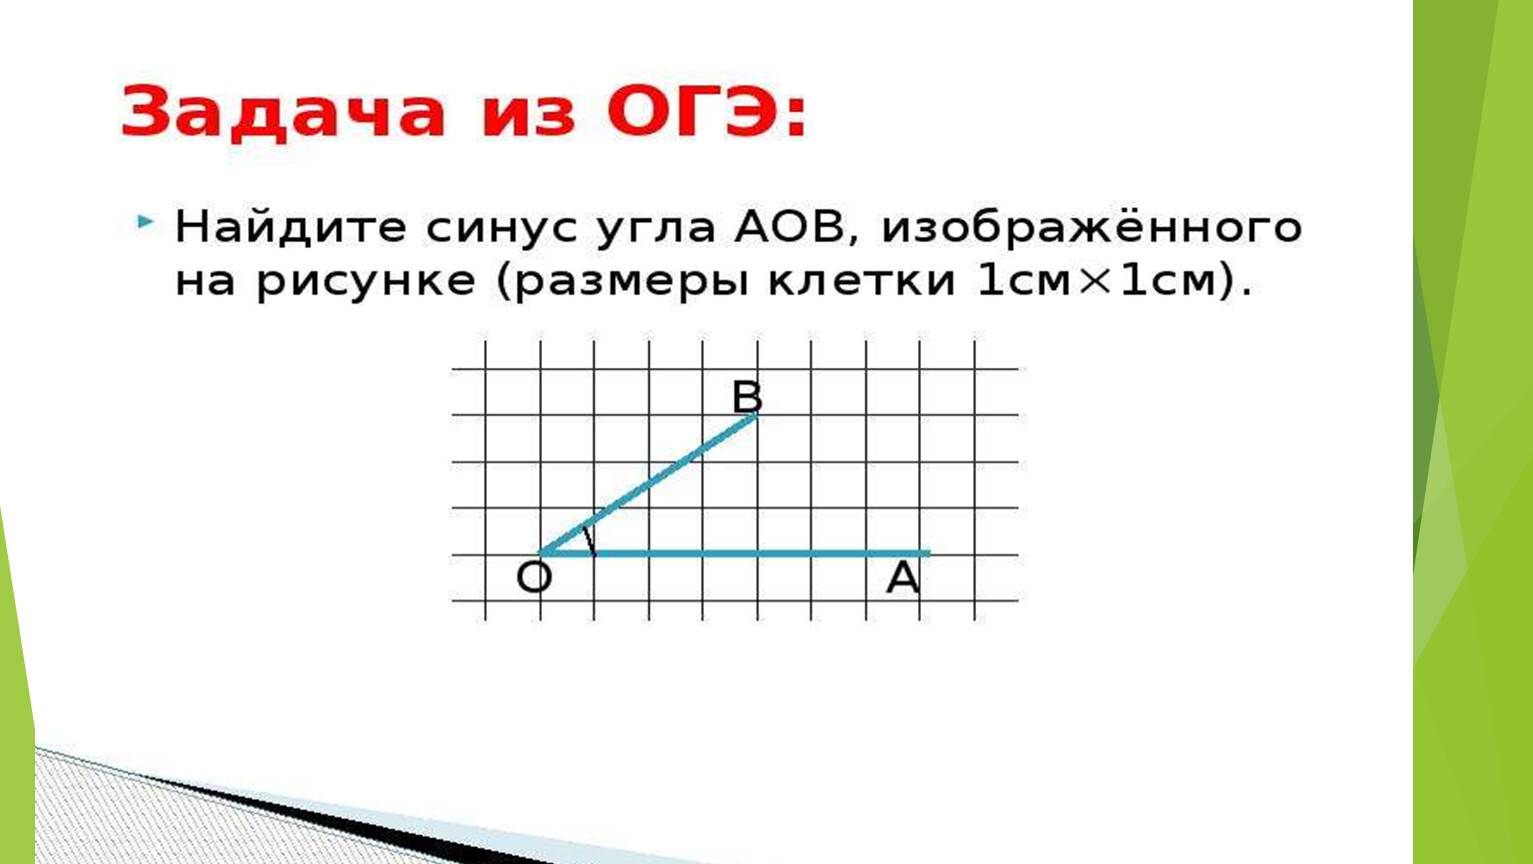 Геометрия огэ 15 19 задание. Геометрия ОГЭ задания. ОГЭ геометрия 9 класс задачи. Задания из геометрии ОГЭ. Задачи на сетке по геометрии ОГЭ.